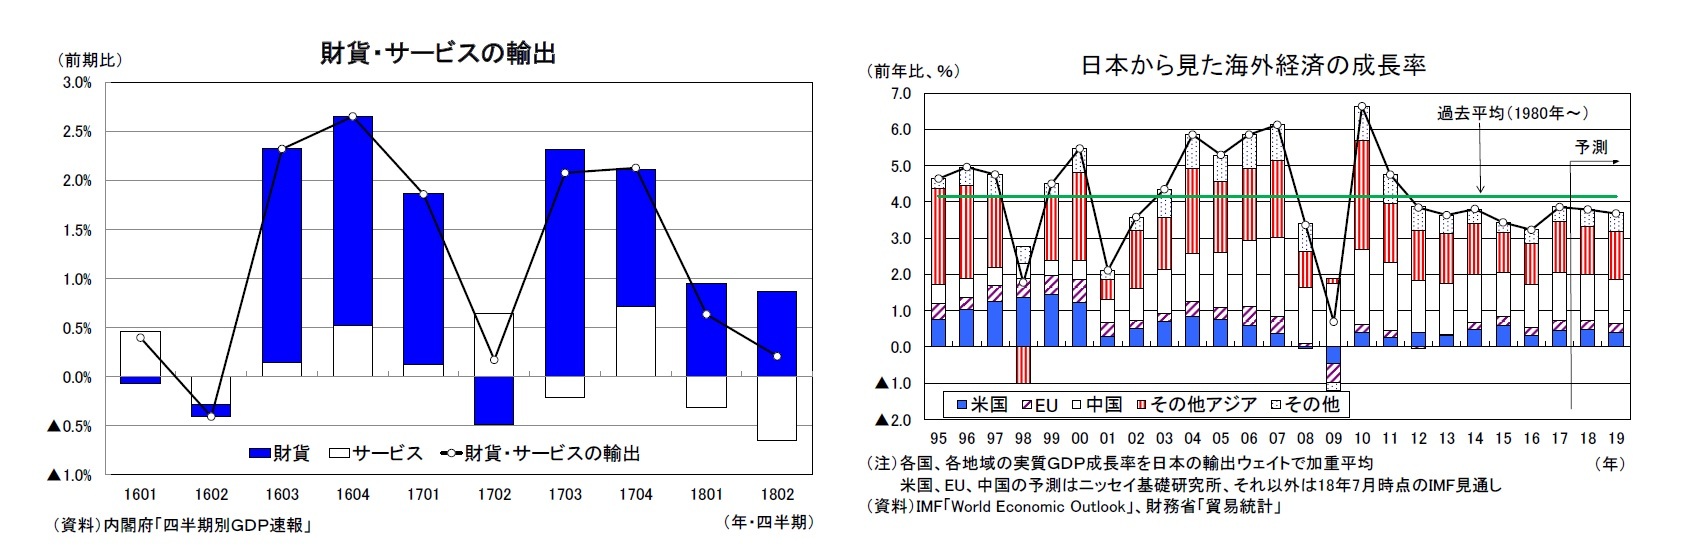 財貨・サービスの輸出/日本から見た海外経済の成長率